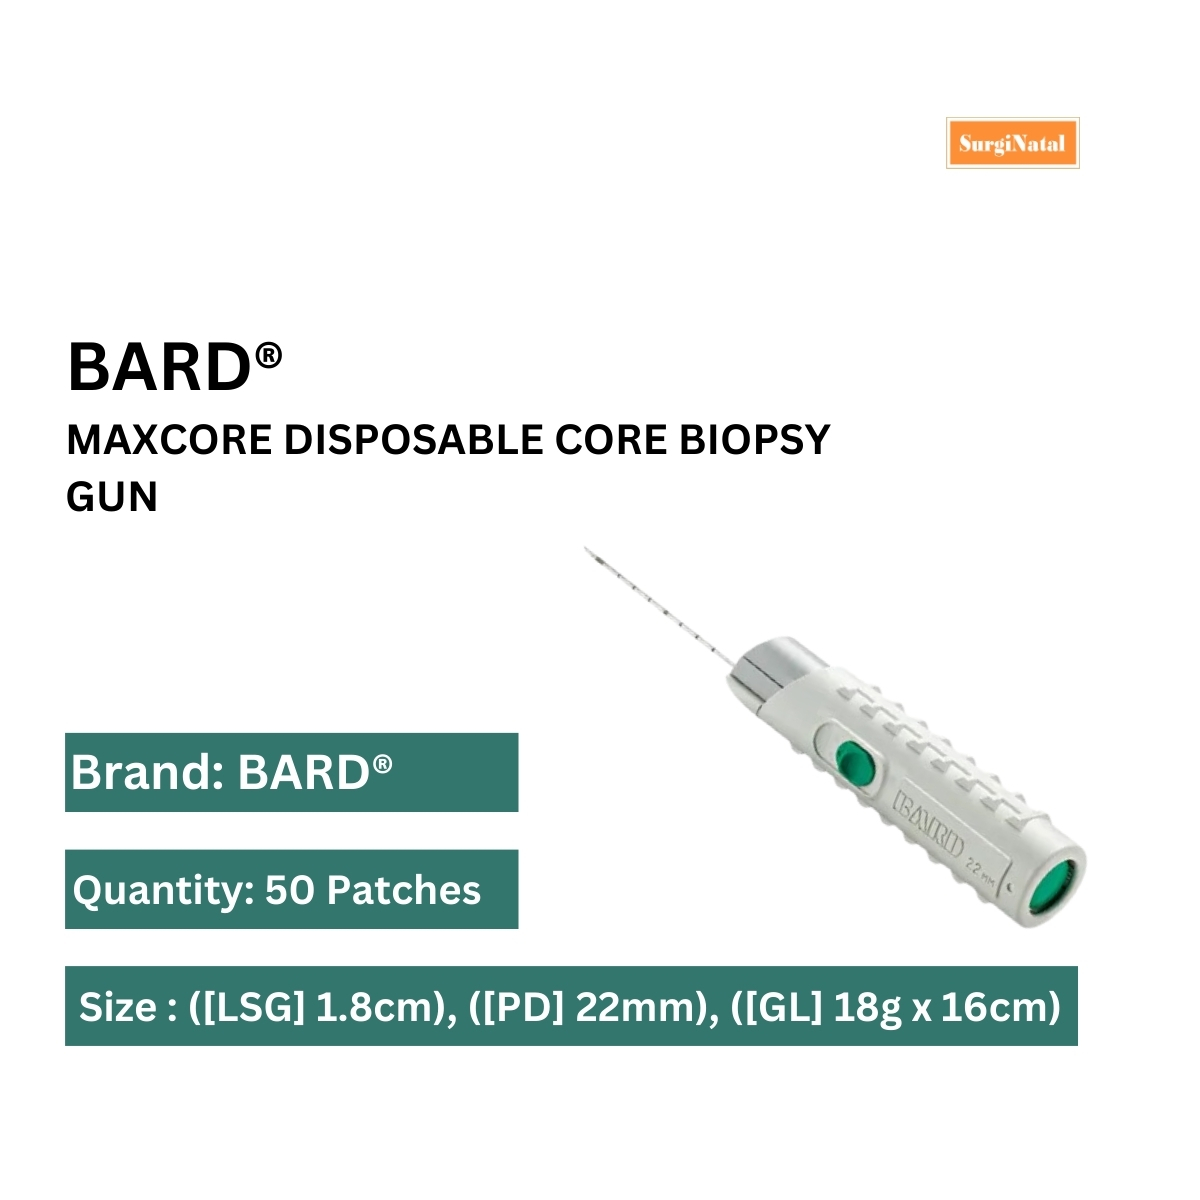 bard® maxcore disposable core biopsy gun